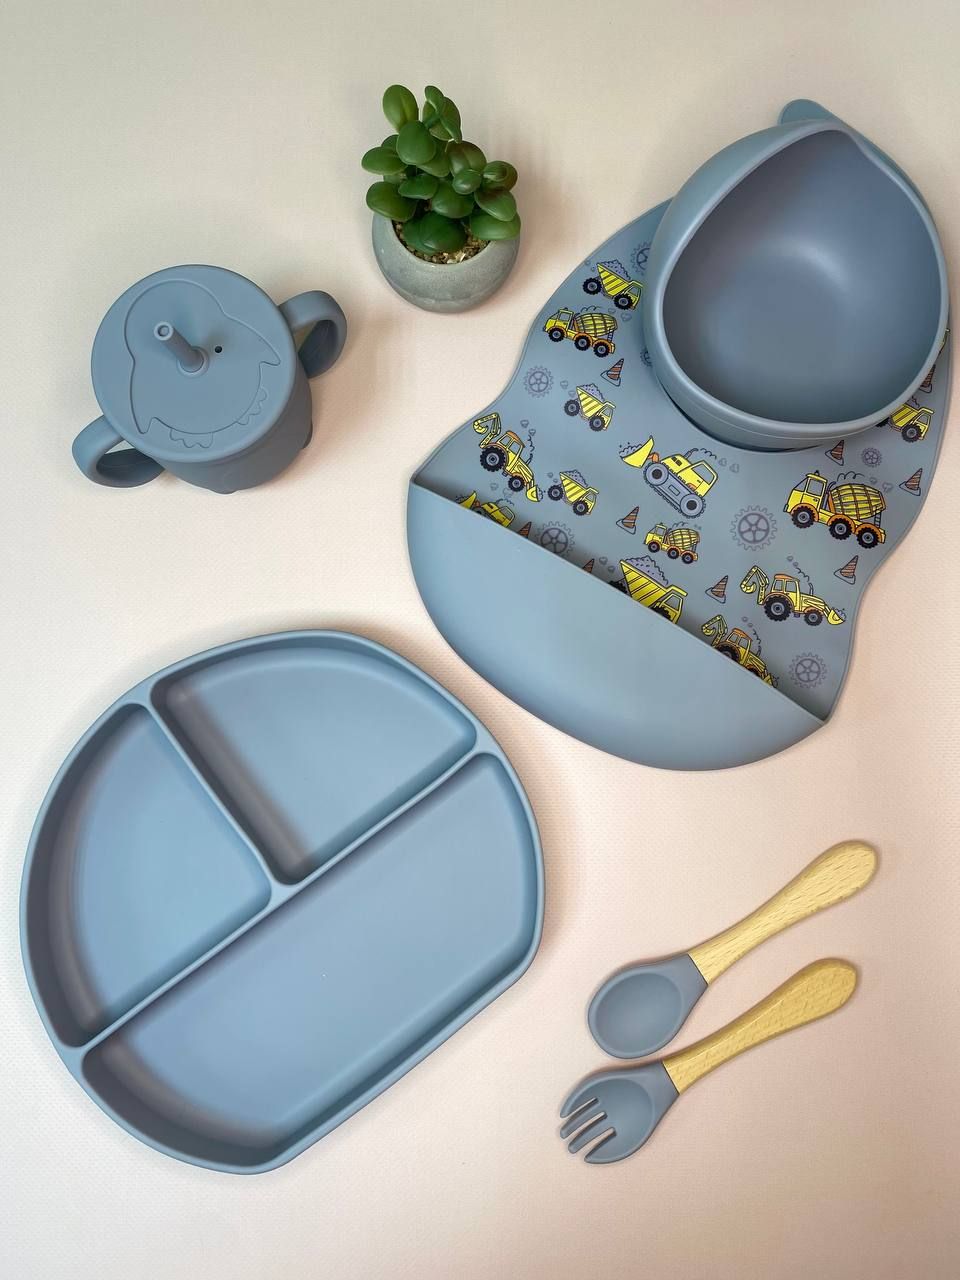 Комплект детской посуды из 6-ти предметов! + ПОДАРОК